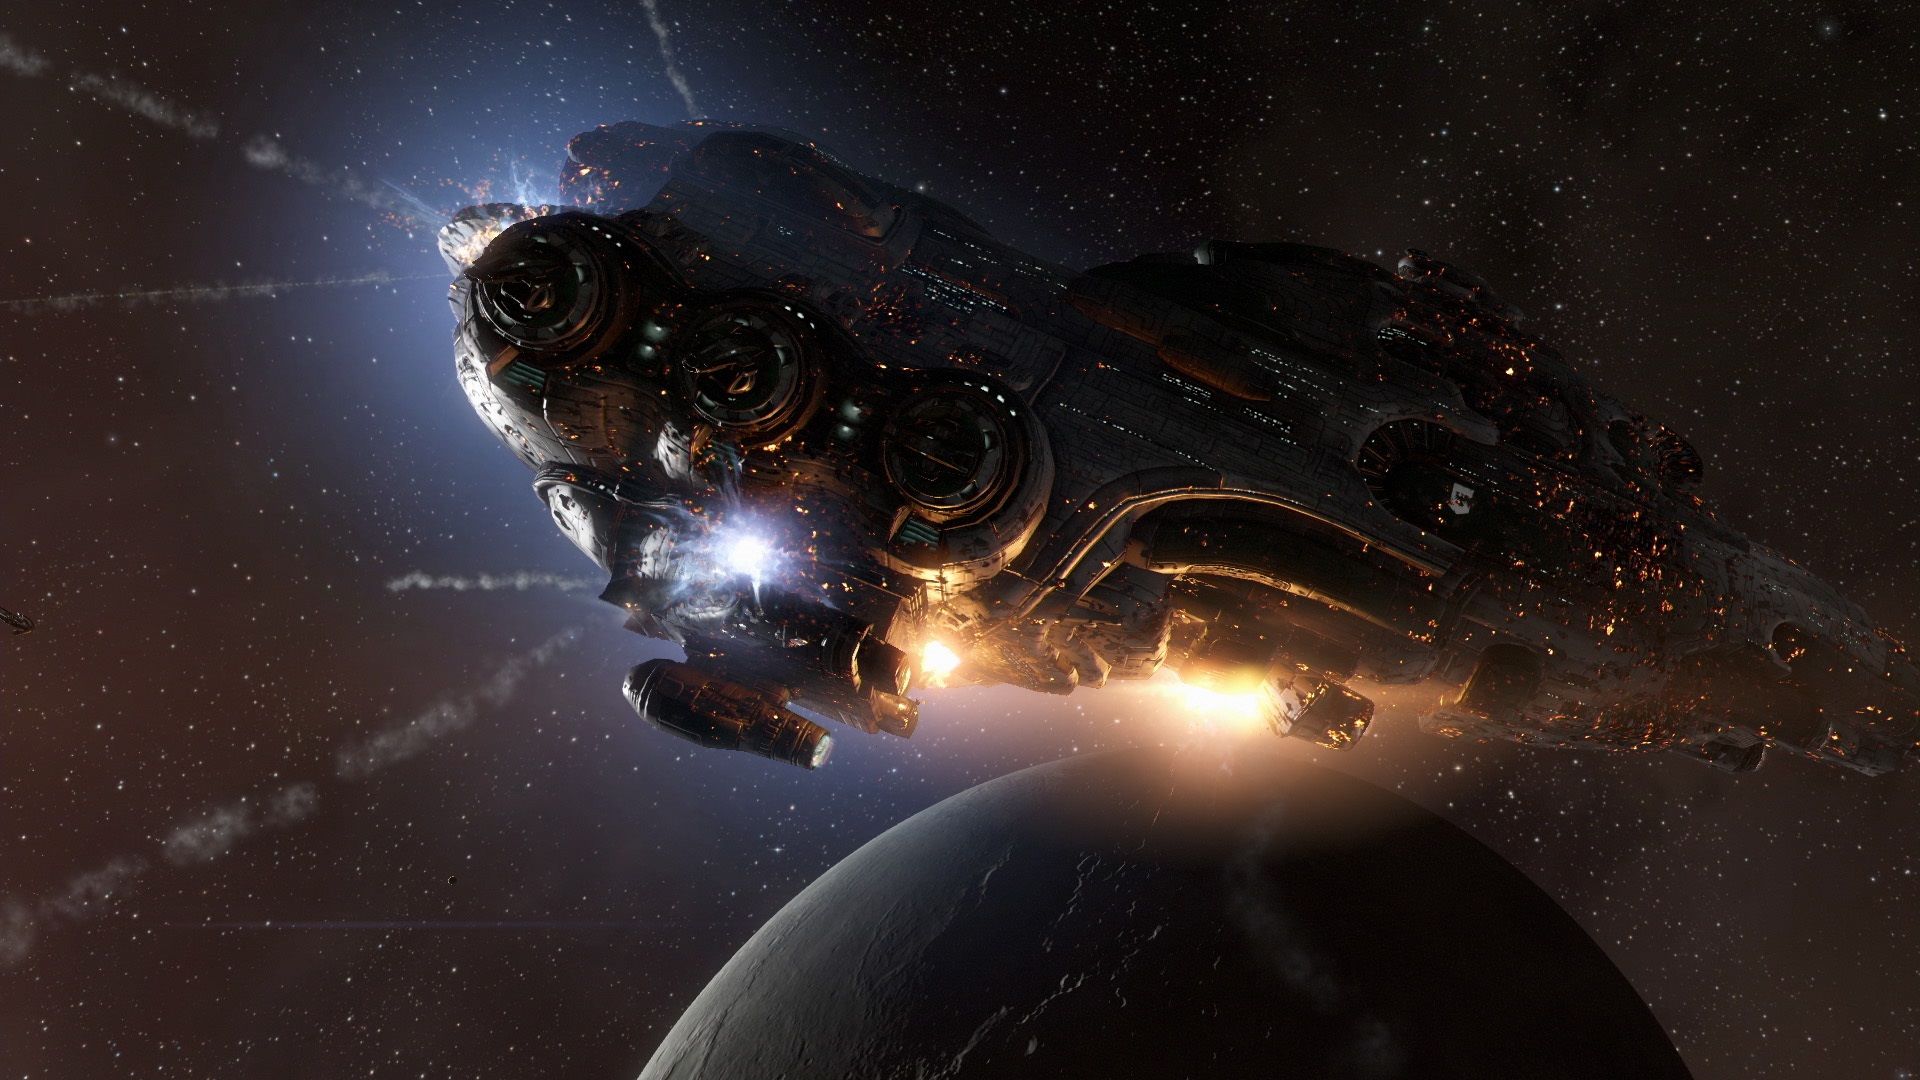 Migliori giochi per PC gratuiti: Eva online. L'immagine mostra un'enorme nave che vola nello spazio